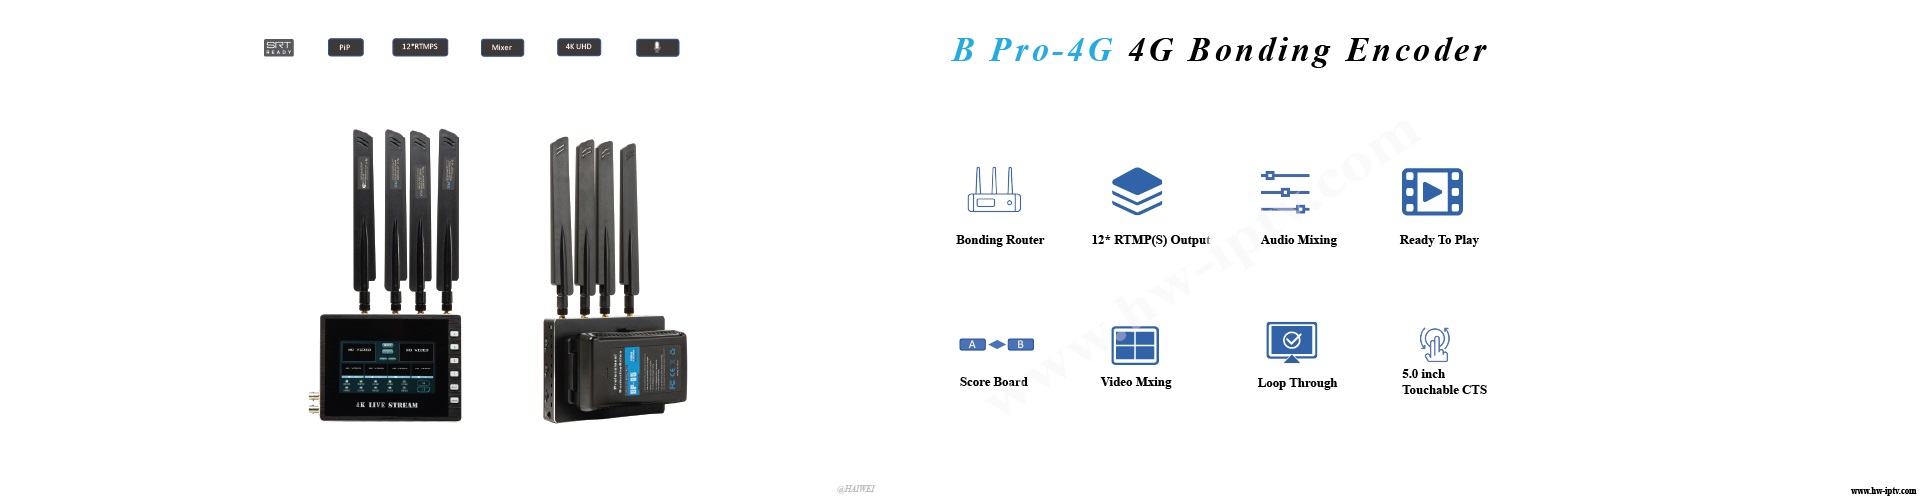 B Pro 4G Cellular Bonding Encoder 